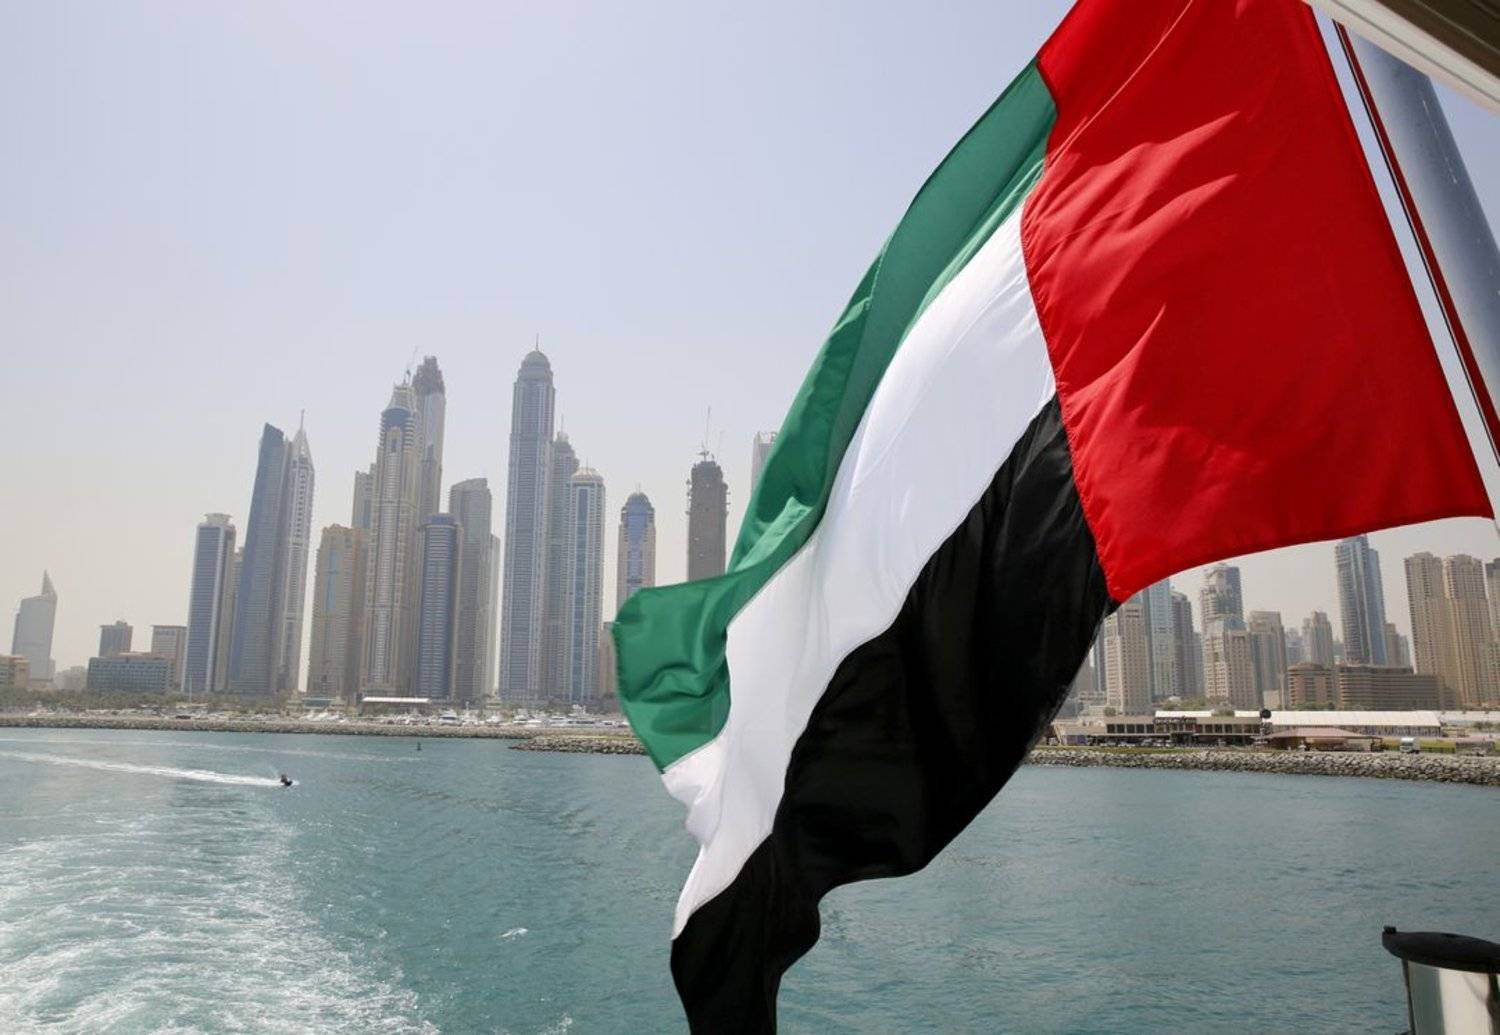 A UAE flag flies over a boat at Dubai Marina, Dubai, United Arab Emirates May 22, 2015. (Reuters)